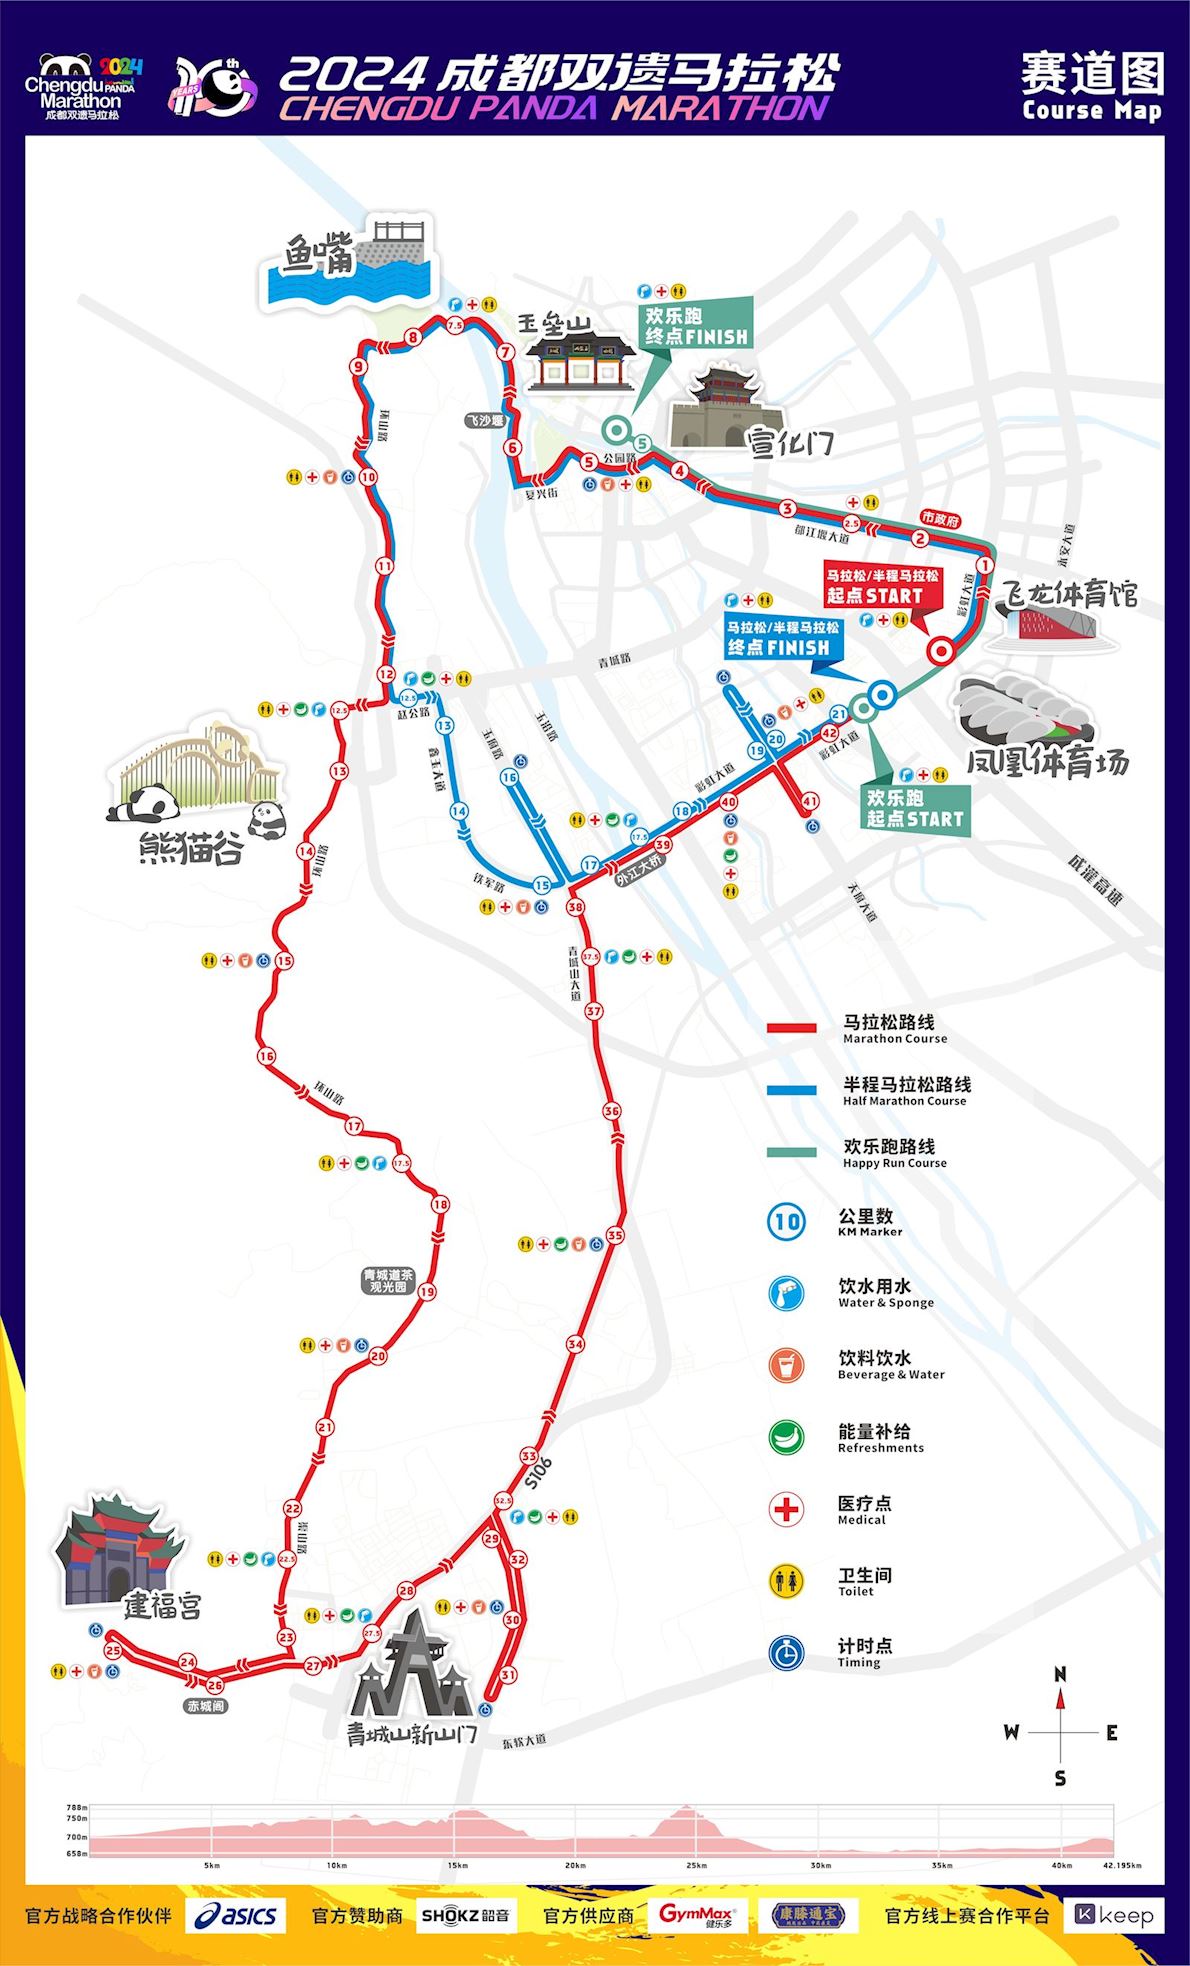 Chengdu Panda Marathon MAPA DEL RECORRIDO DE